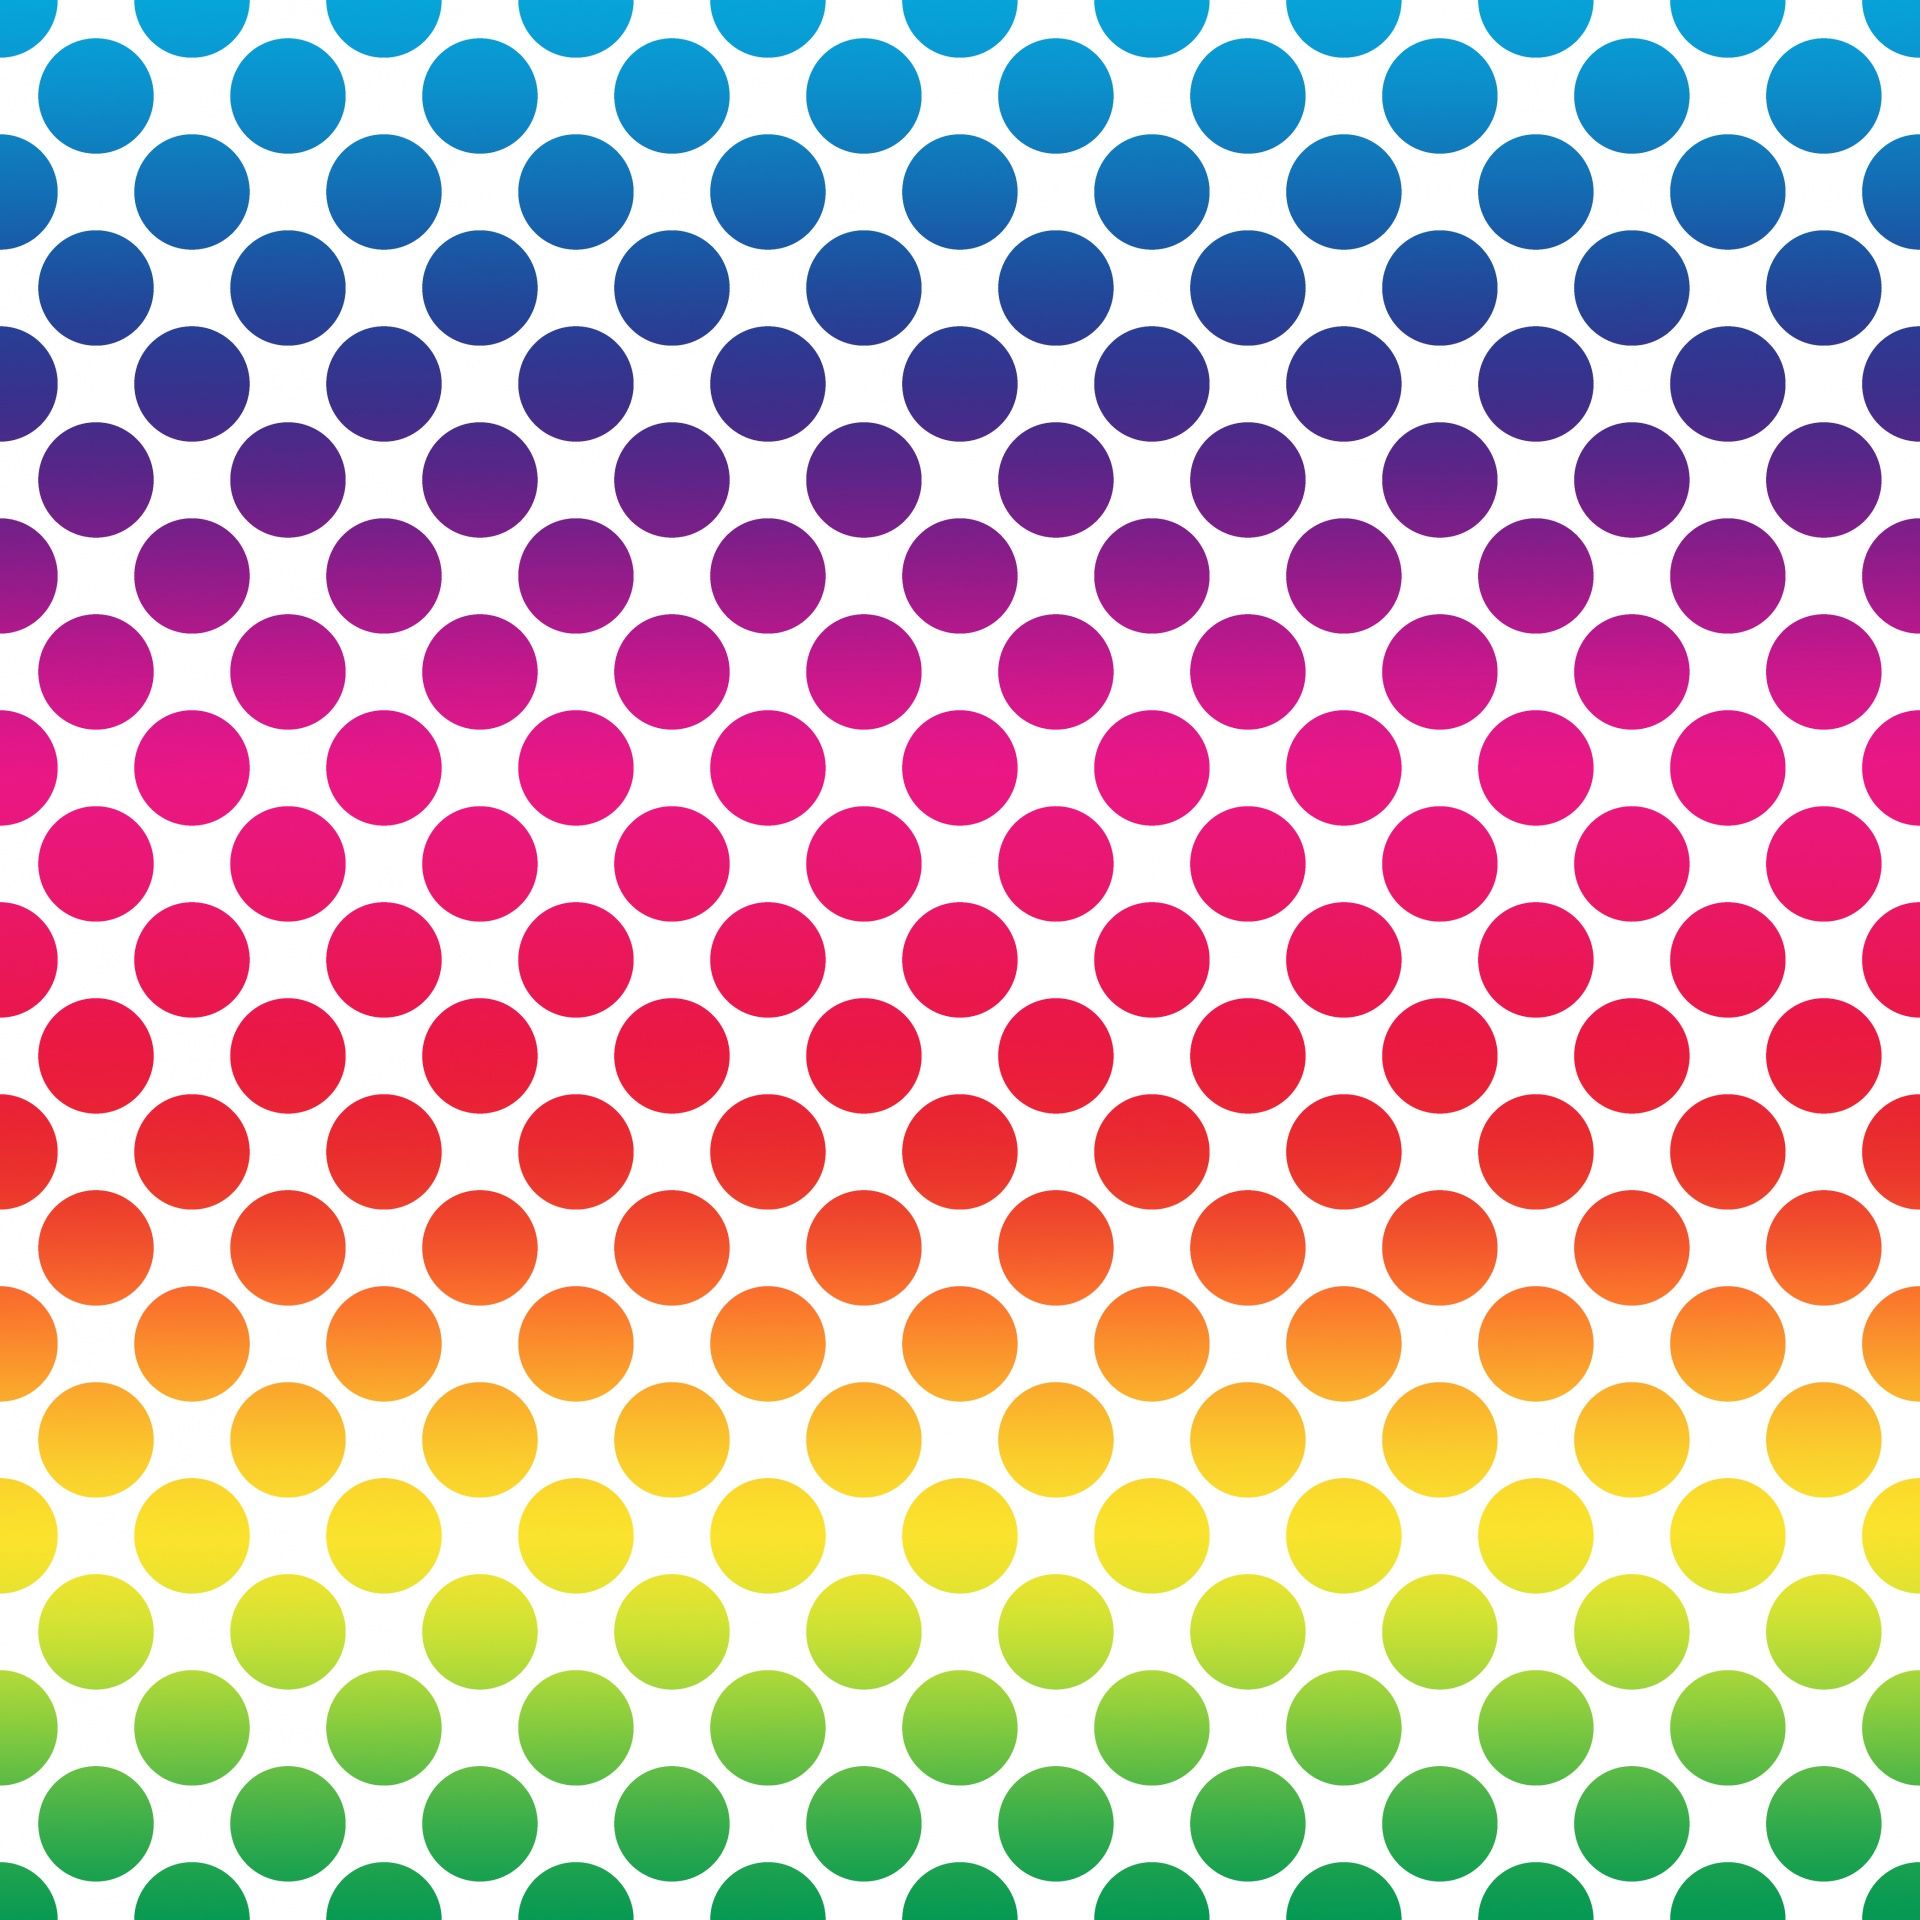 Polka dots Dots Spots Free Photo Polka Dot Patterns